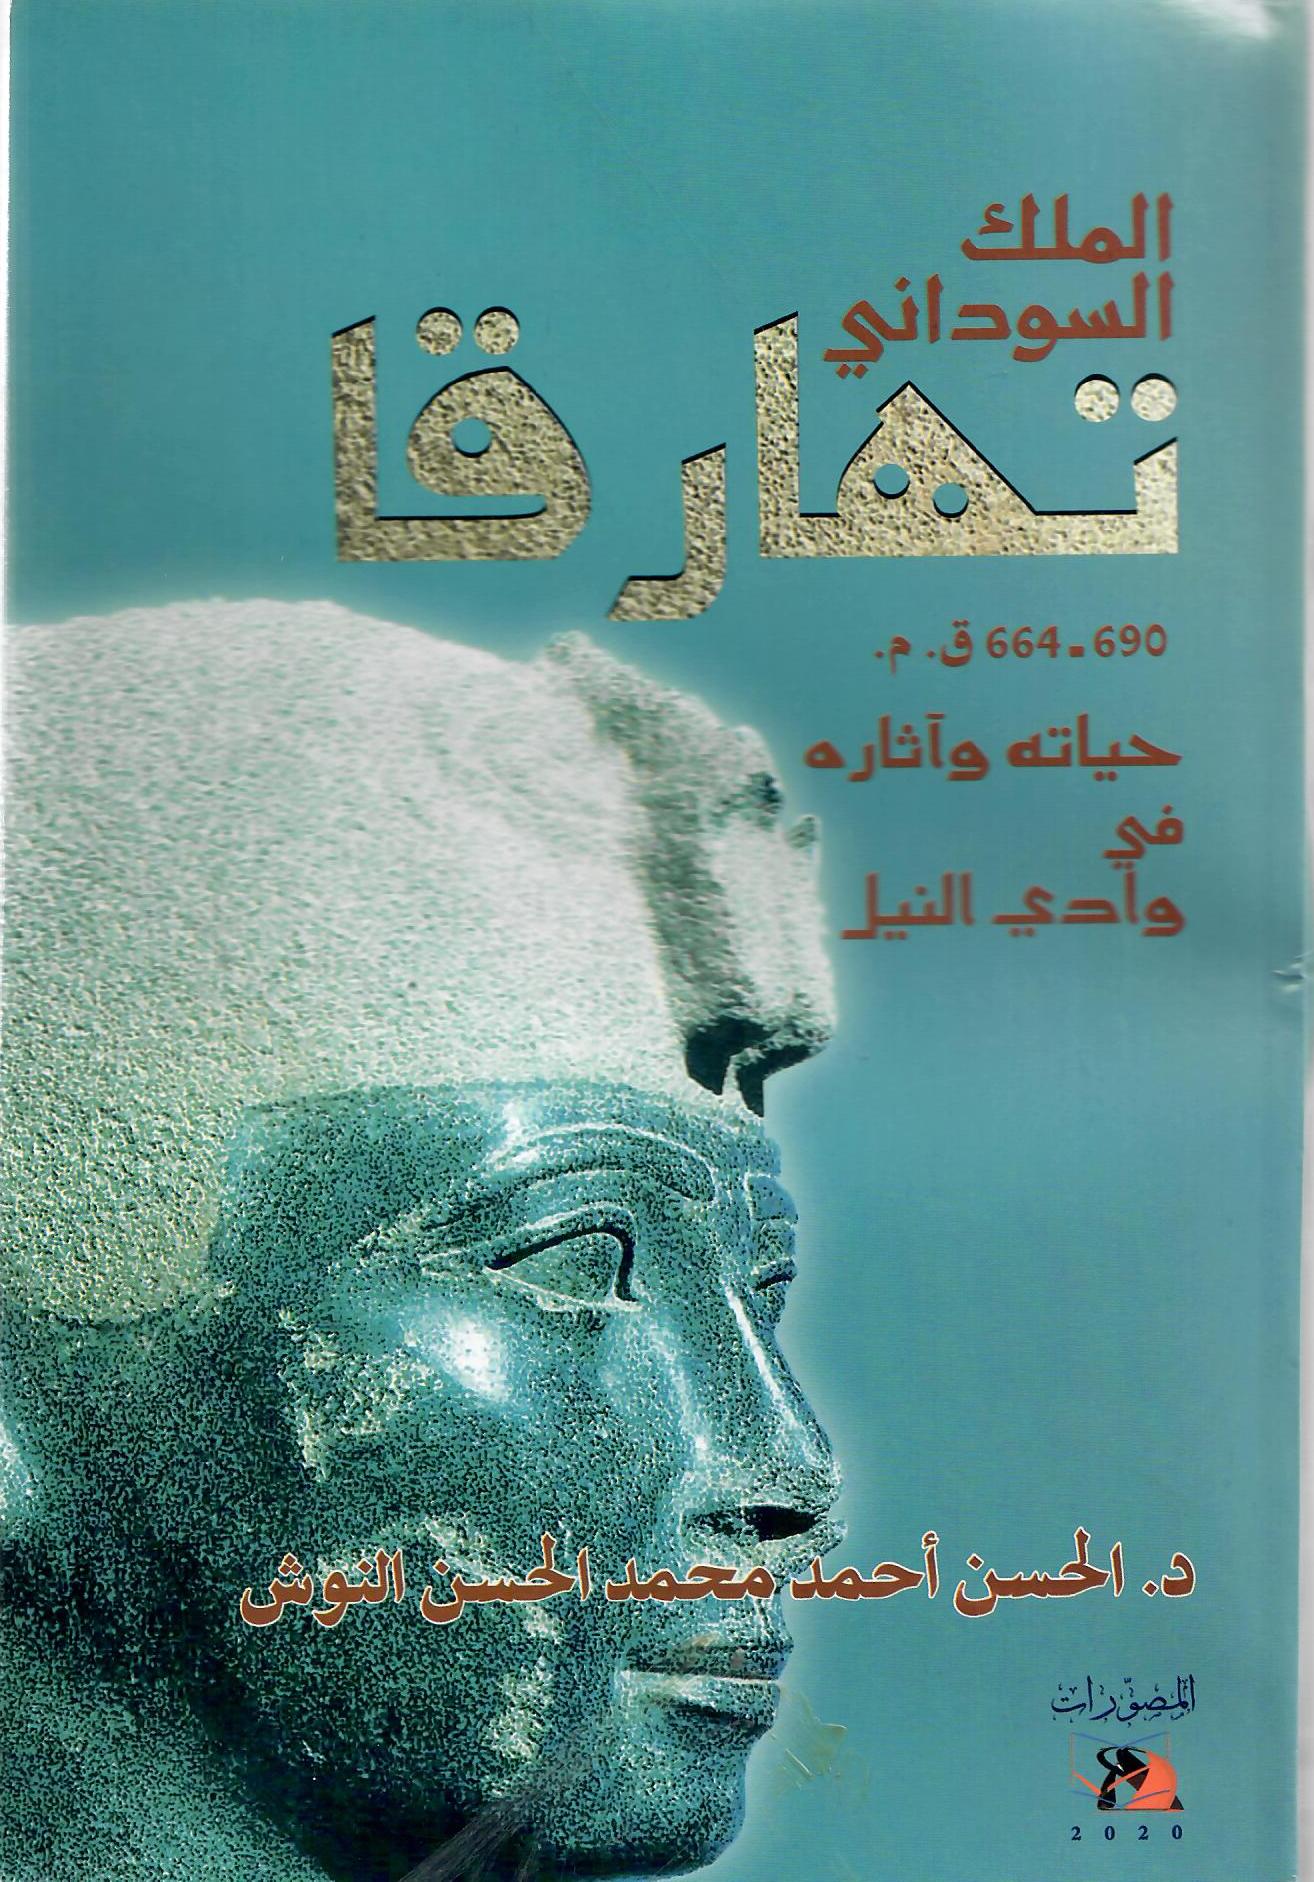 الملك السودااني تهارقا 690 - 664 م حياته وآثاره في وادي النيل